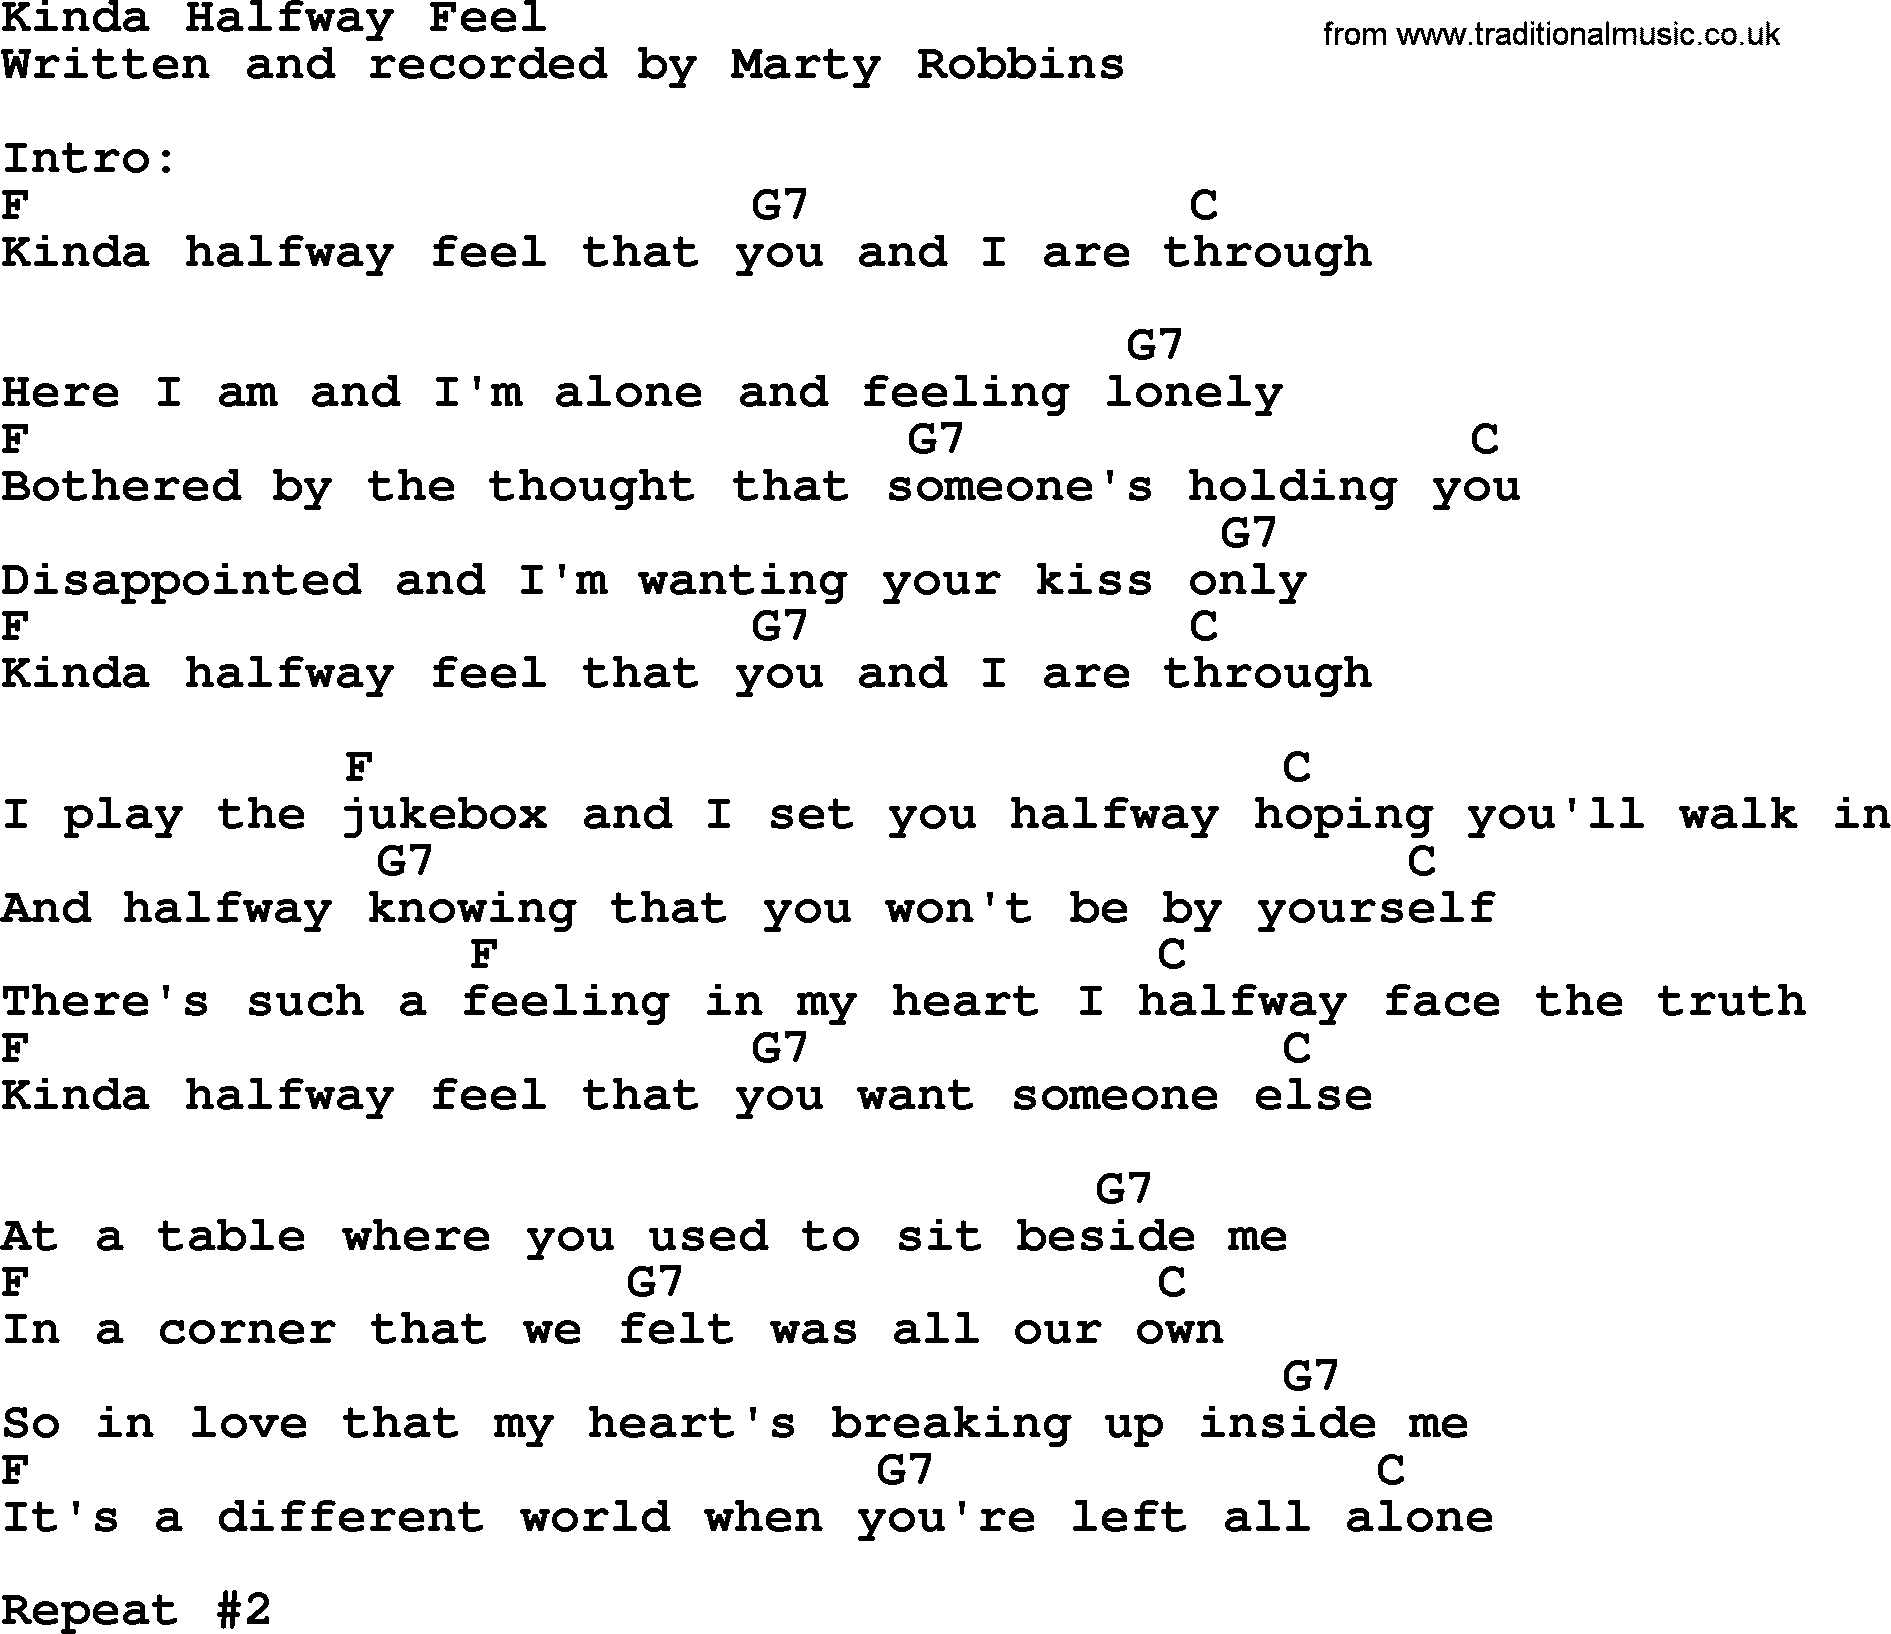 Marty Robbins song: Kinda Halfway Feel, lyrics and chords